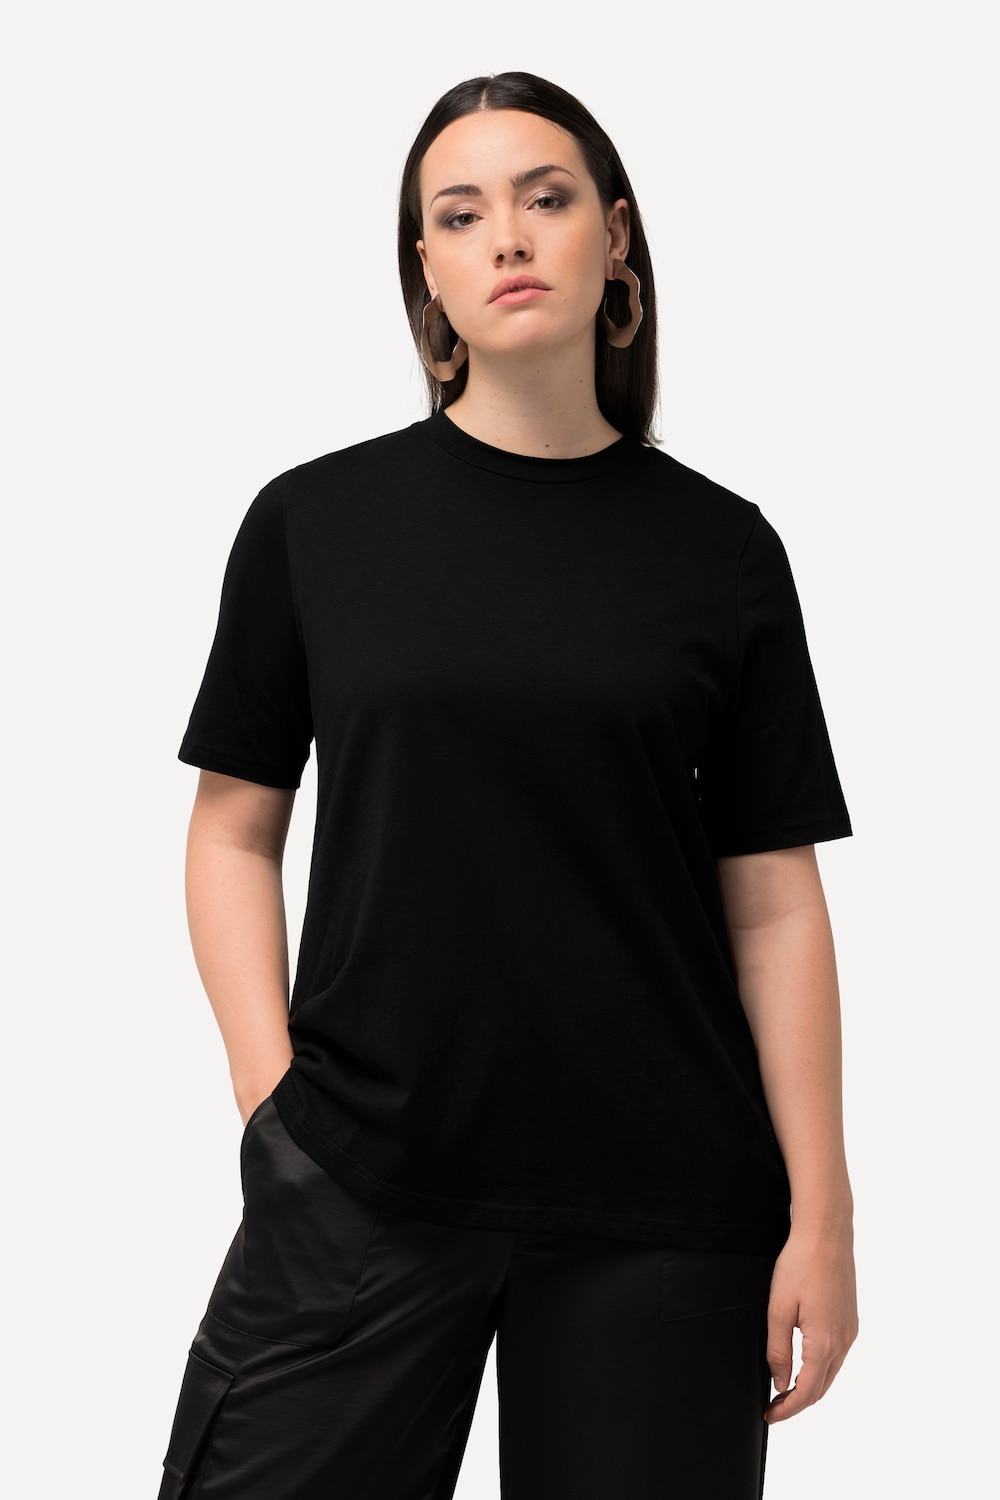 Grote Maten T-shirt, Dames, zwart, Maat: 46/48, Katoen, Ulla Popken